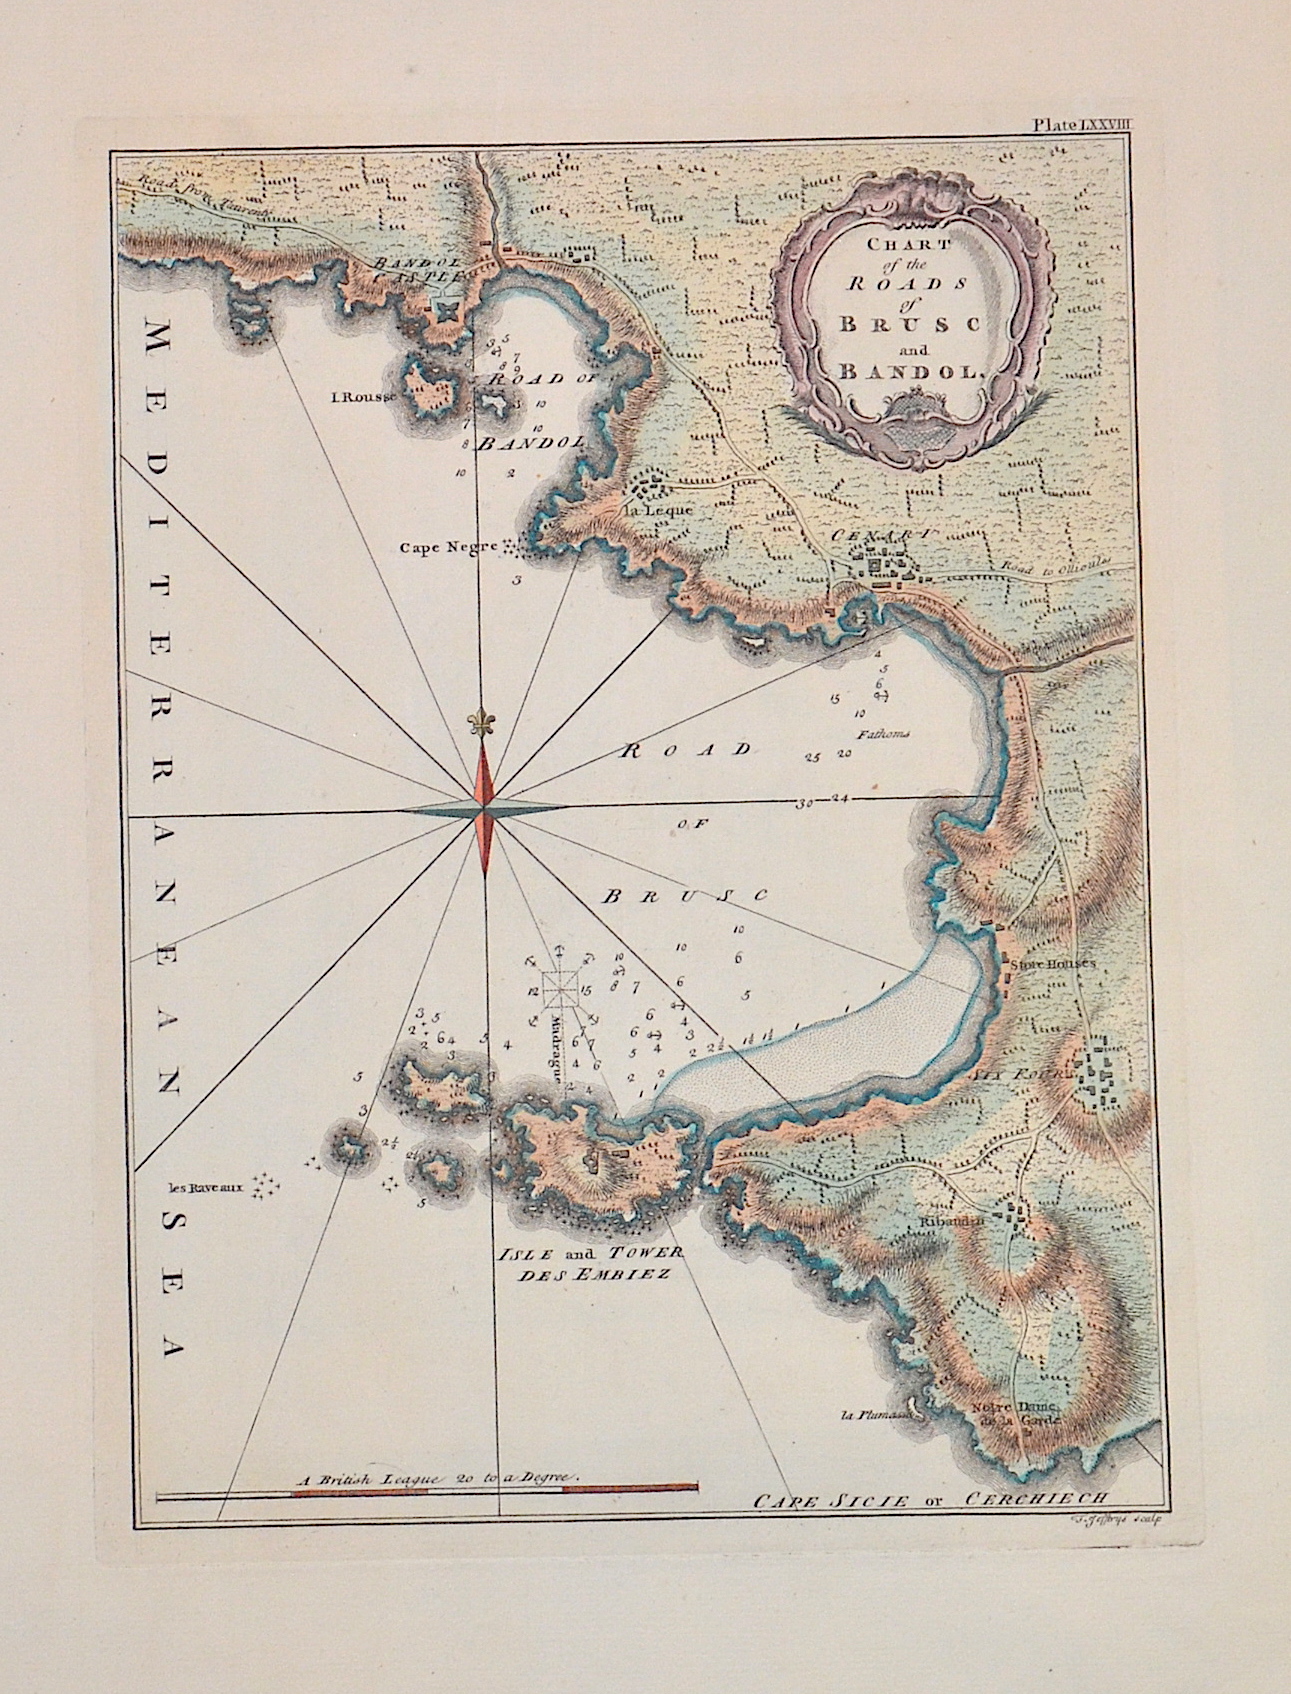 Jefferys Thomas Chart of the Roads of Brusc and Bandol.